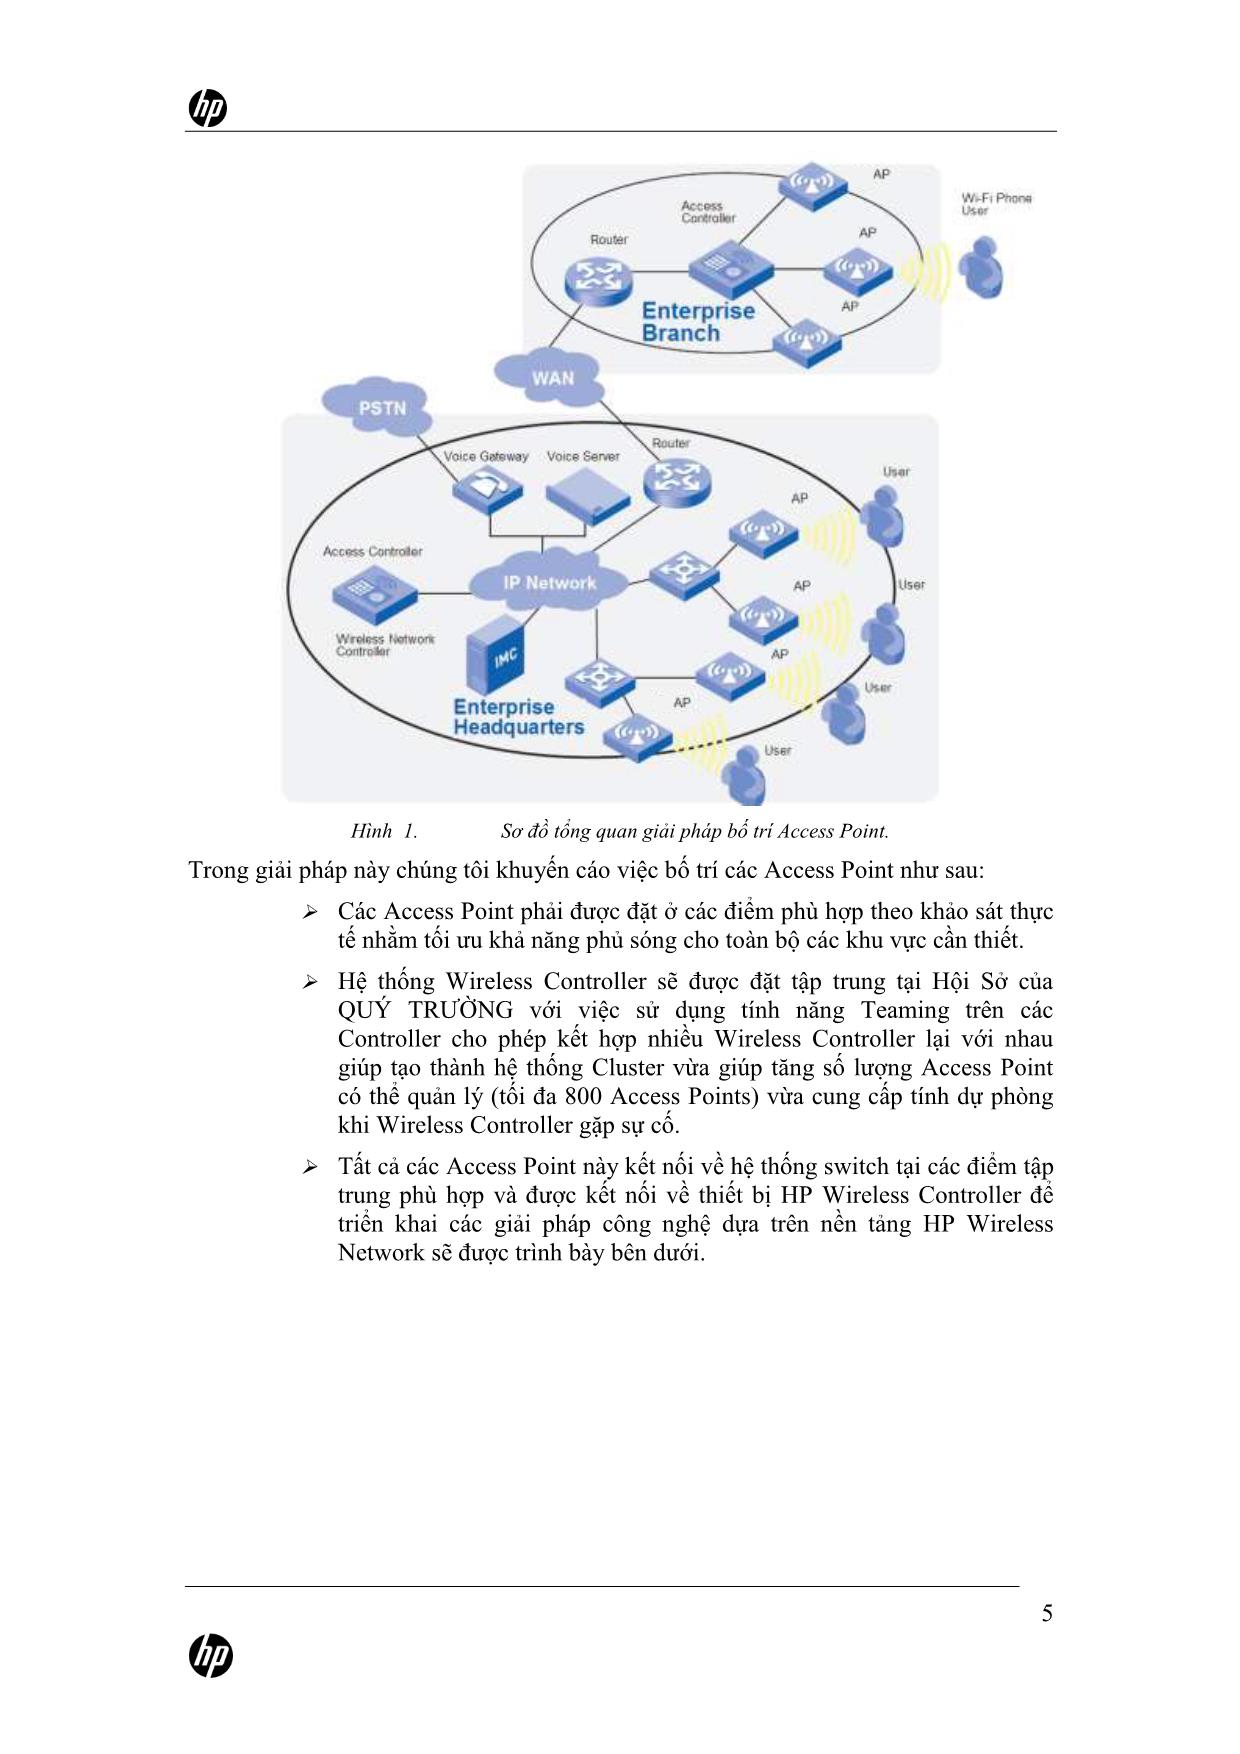 Hồ sơ giải pháp xây dựng hệ thống mạng không dây tại Quý Trường trang 5